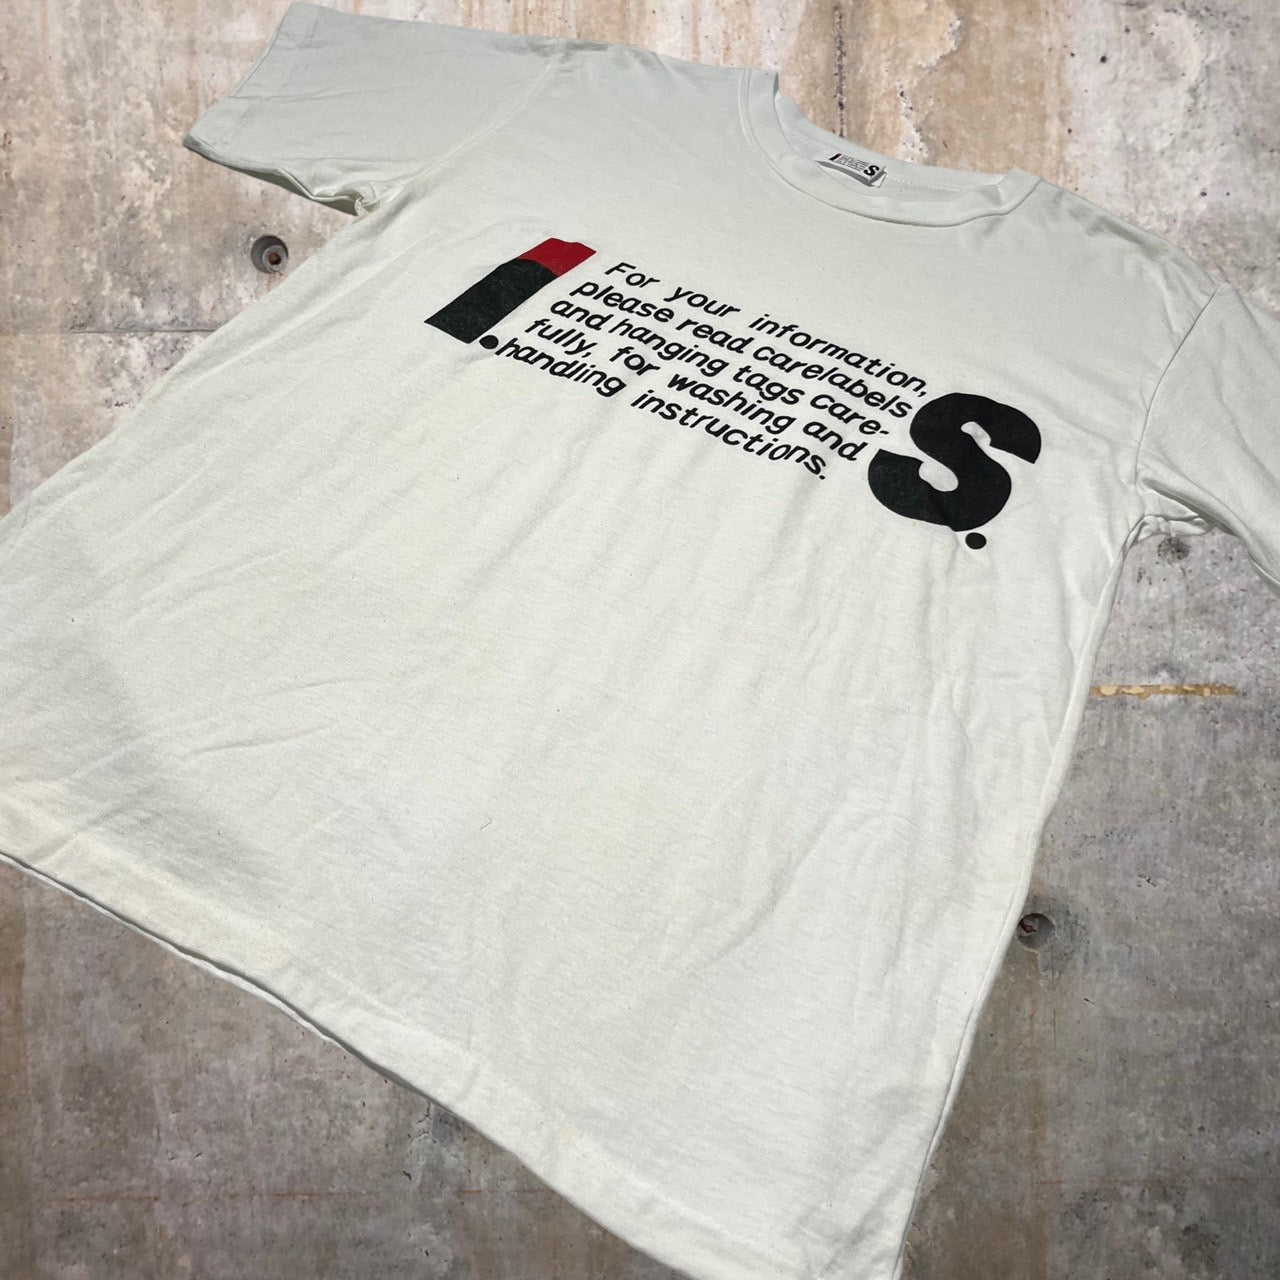 i.s. ISSEY MIYAKE(アイエス イッセイミヤケ) 90's "IS"logo print T-shirt/ロゴTシャツ IS10-JK004 M ホワイト